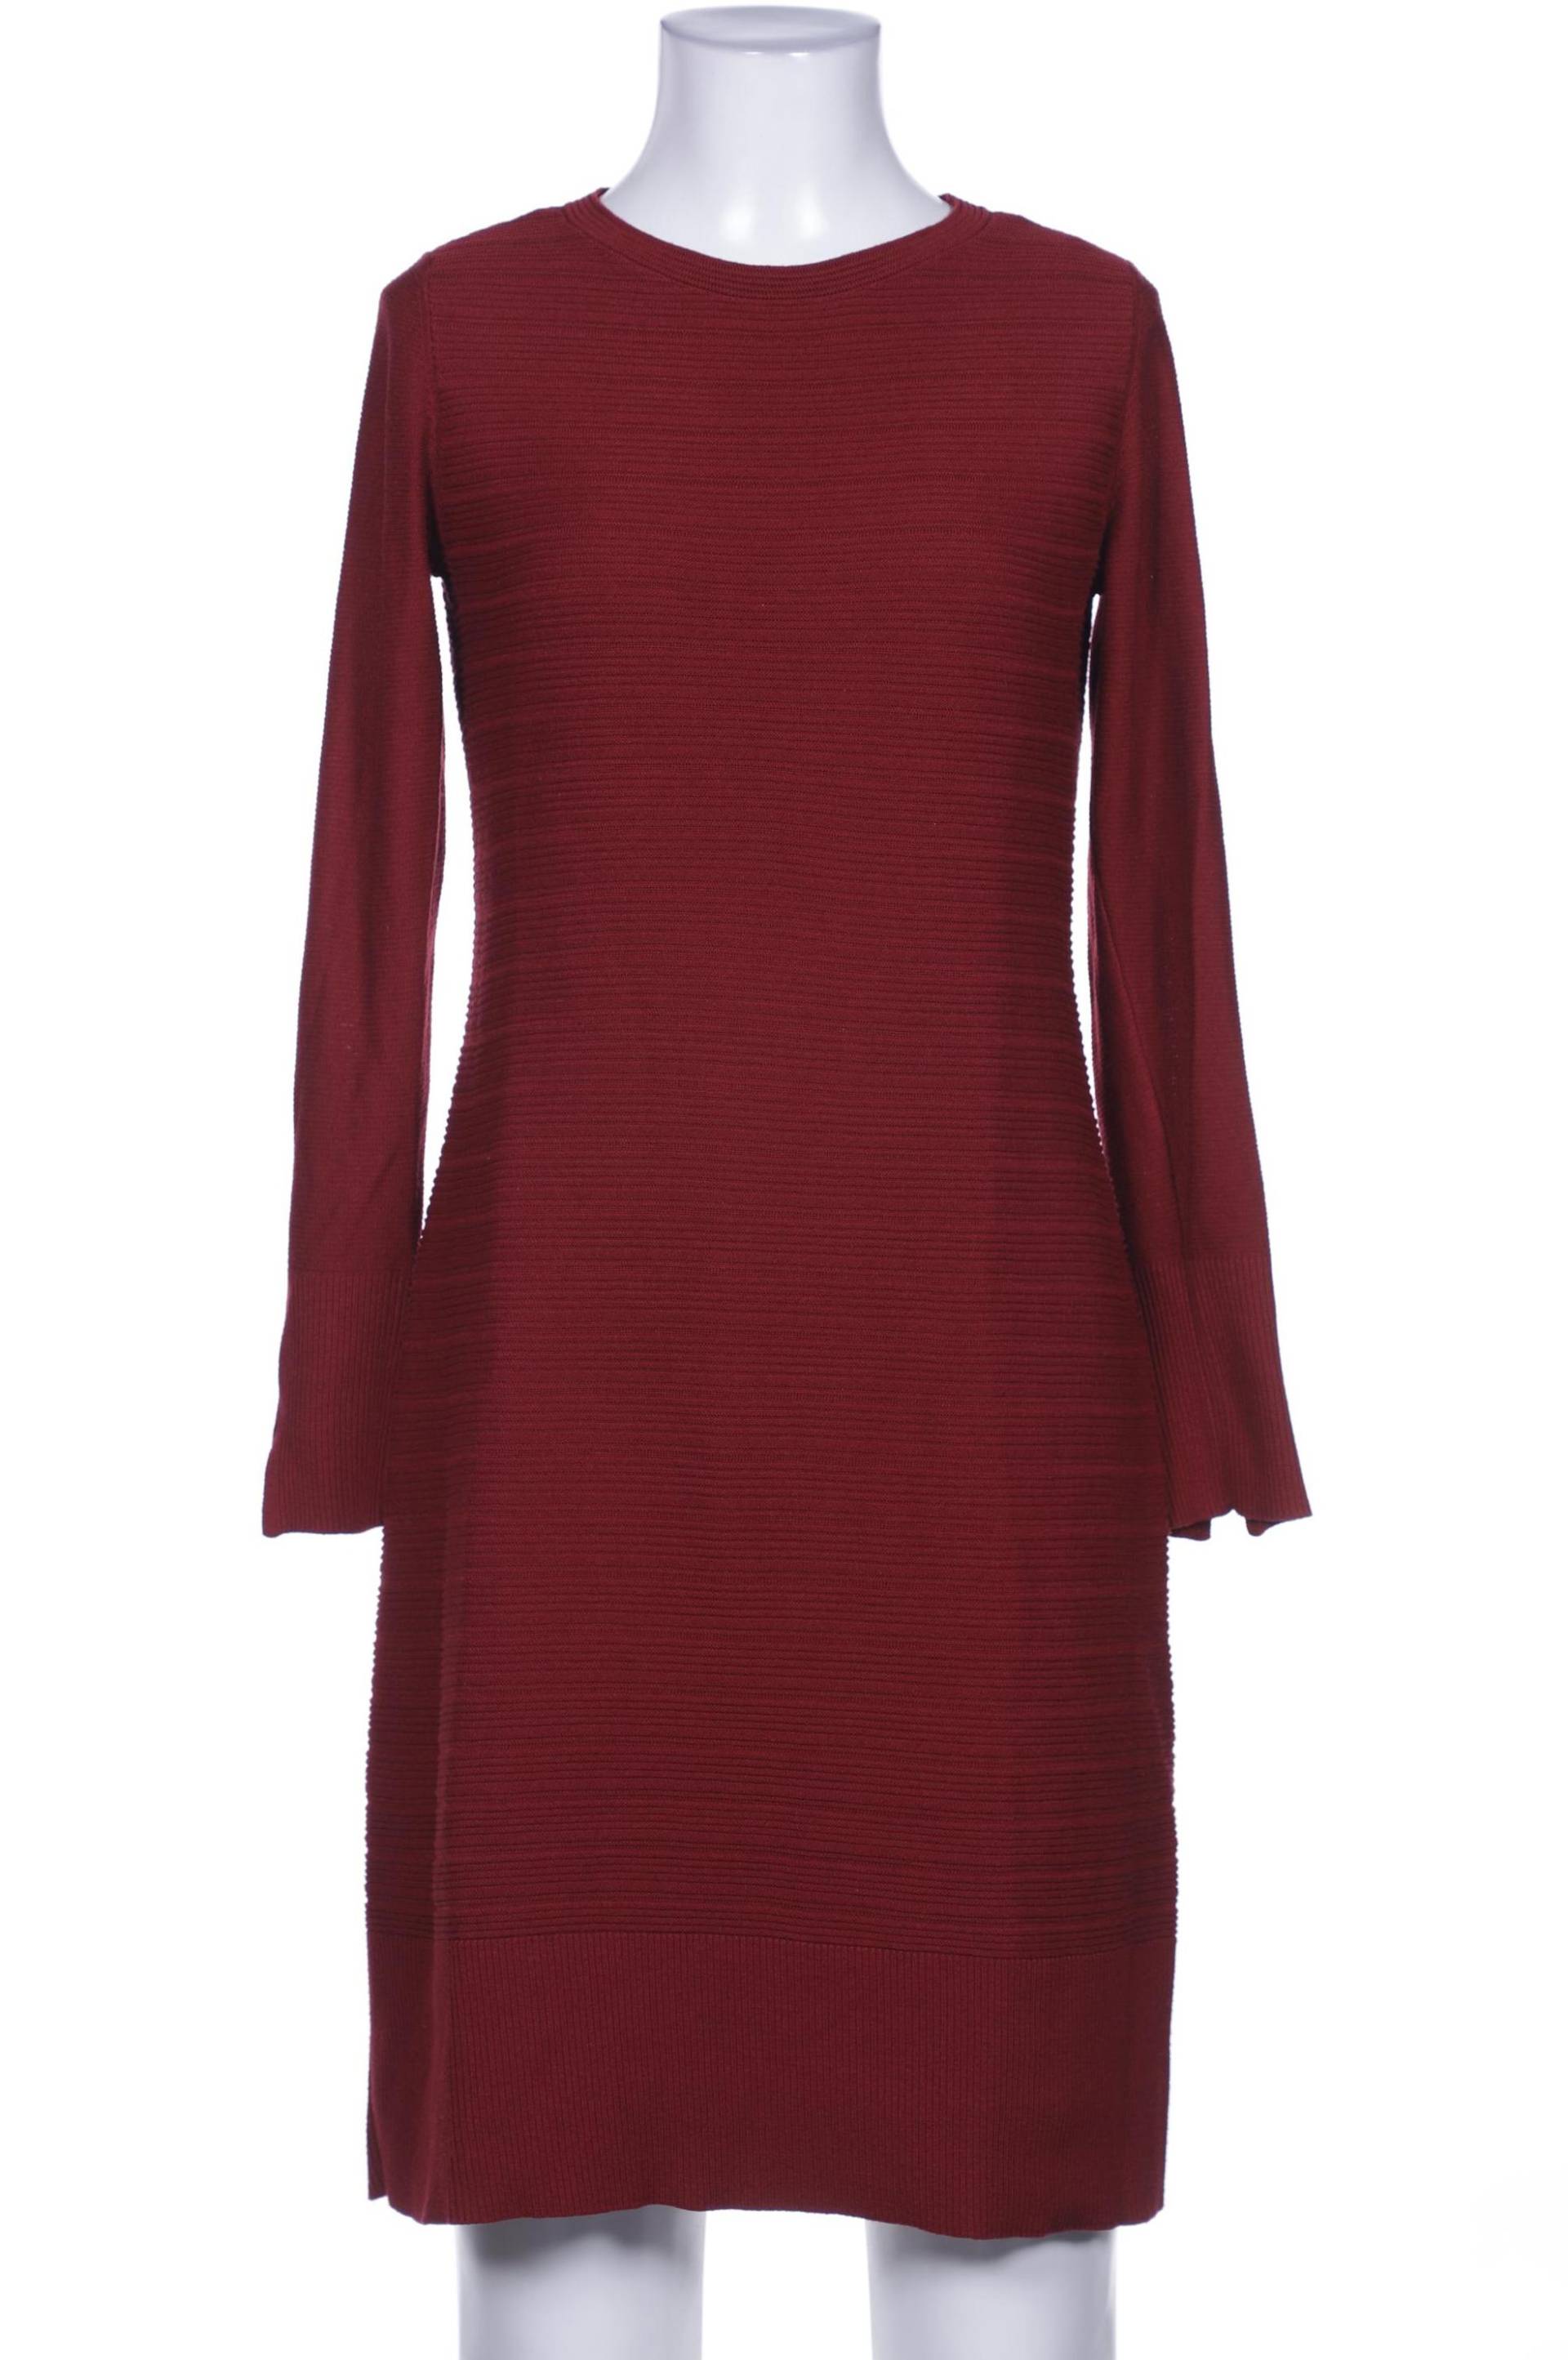 Esprit Damen Kleid, rot, Gr. 36 von Esprit